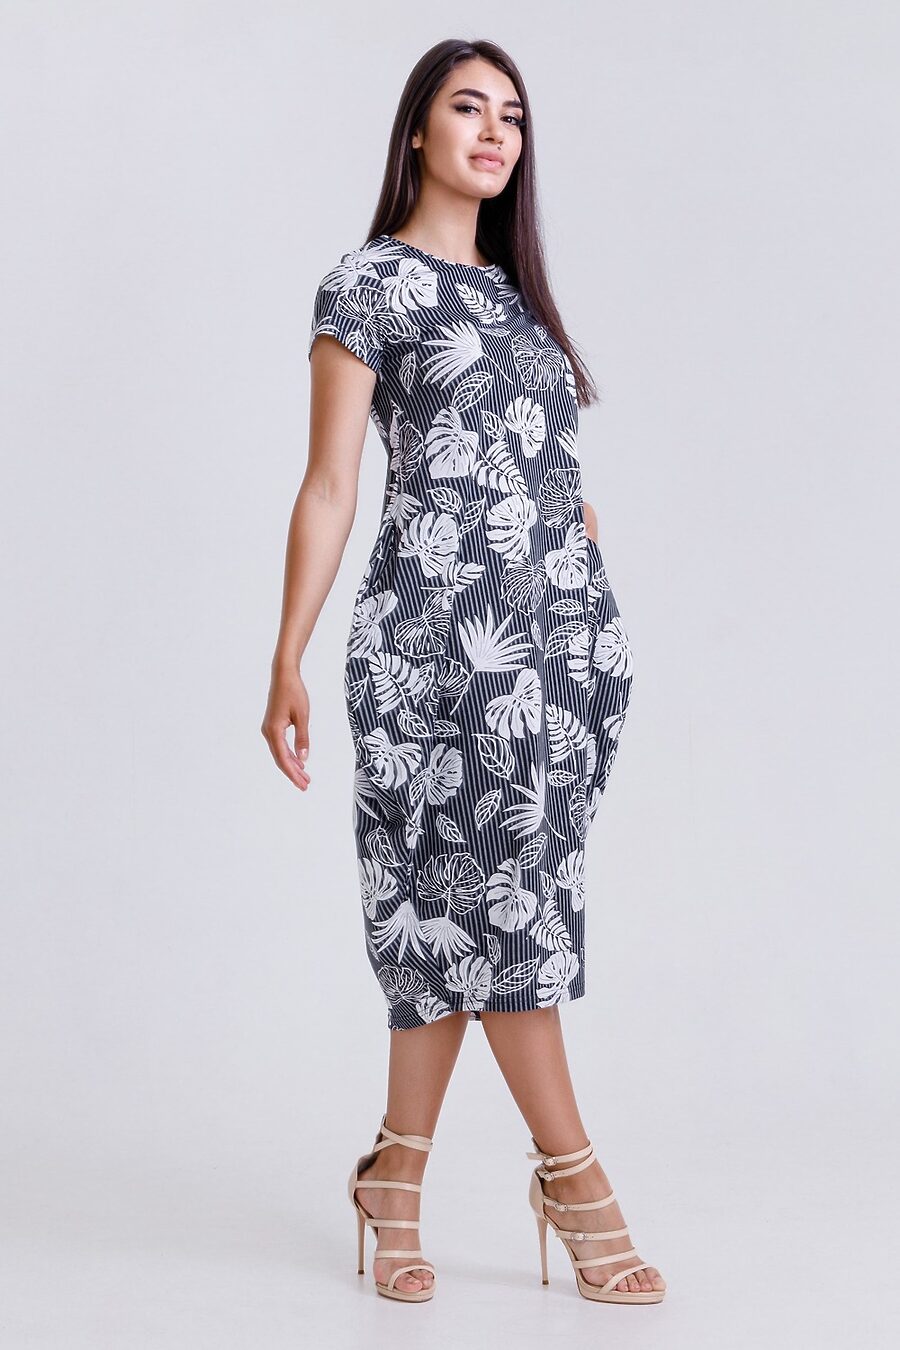 Платье 50516 для женщин НАТАЛИ 796343 купить оптом от производителя. Совместная покупка женской одежды в OptMoyo